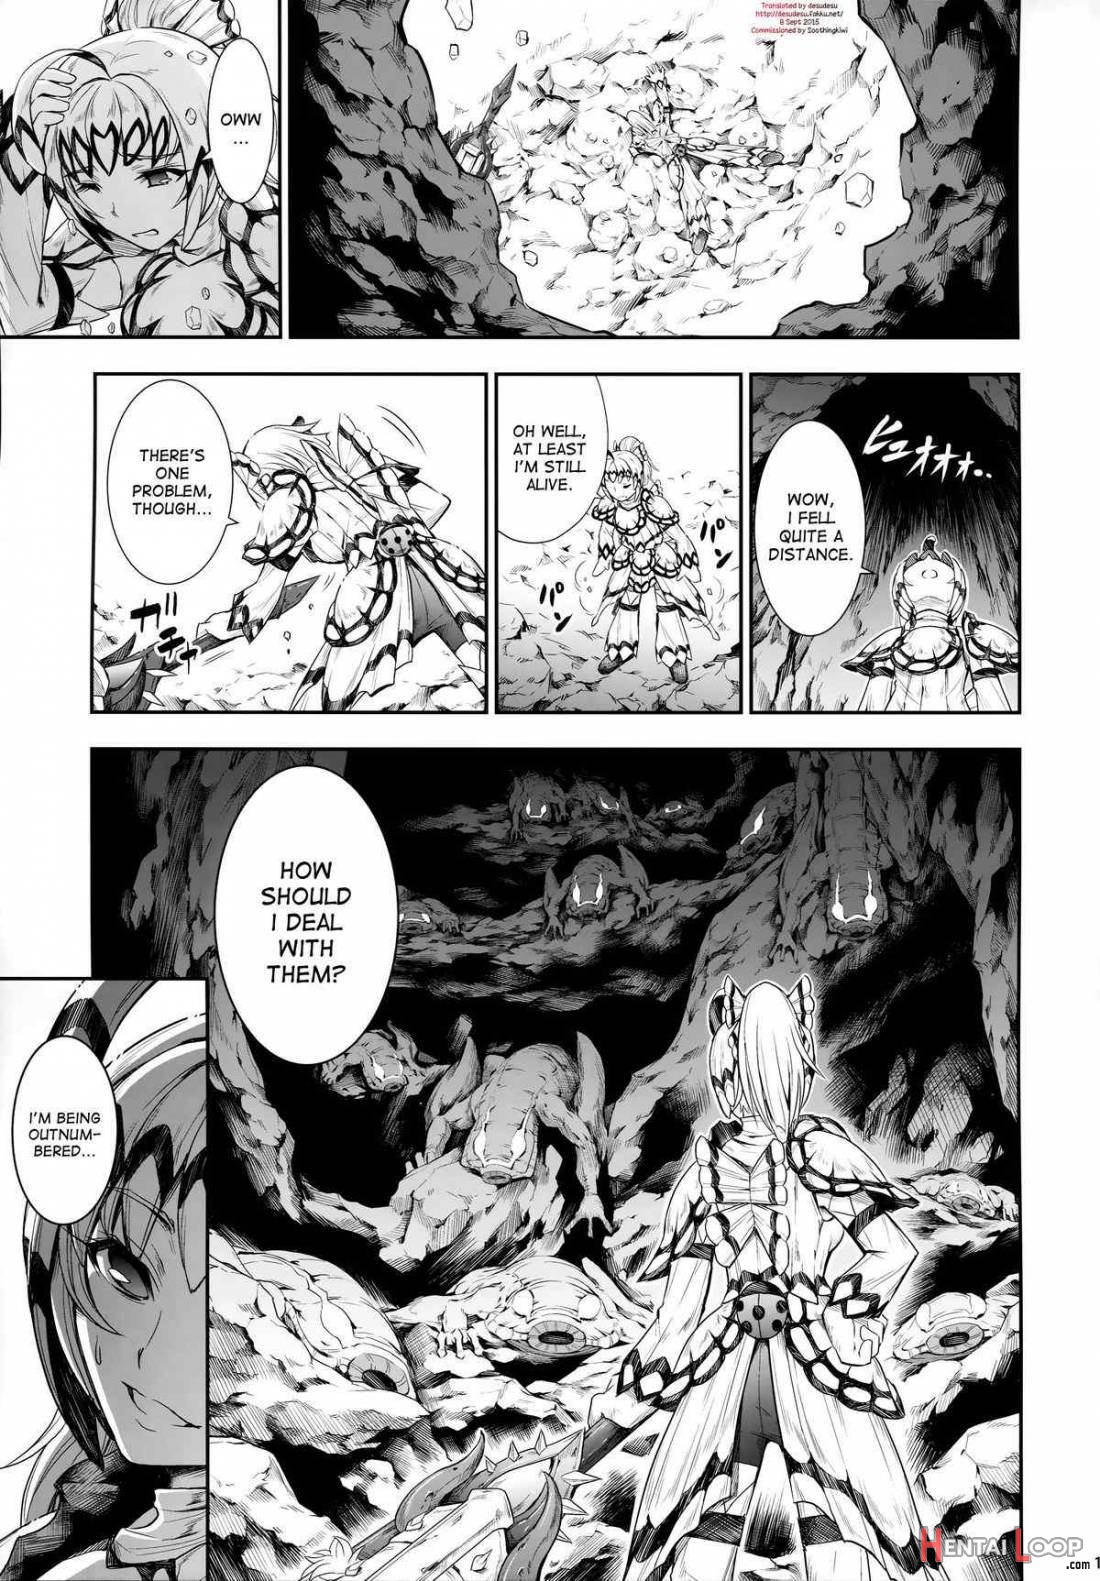 Solo Hunter No Seitai 4: The Fifth Part page 2